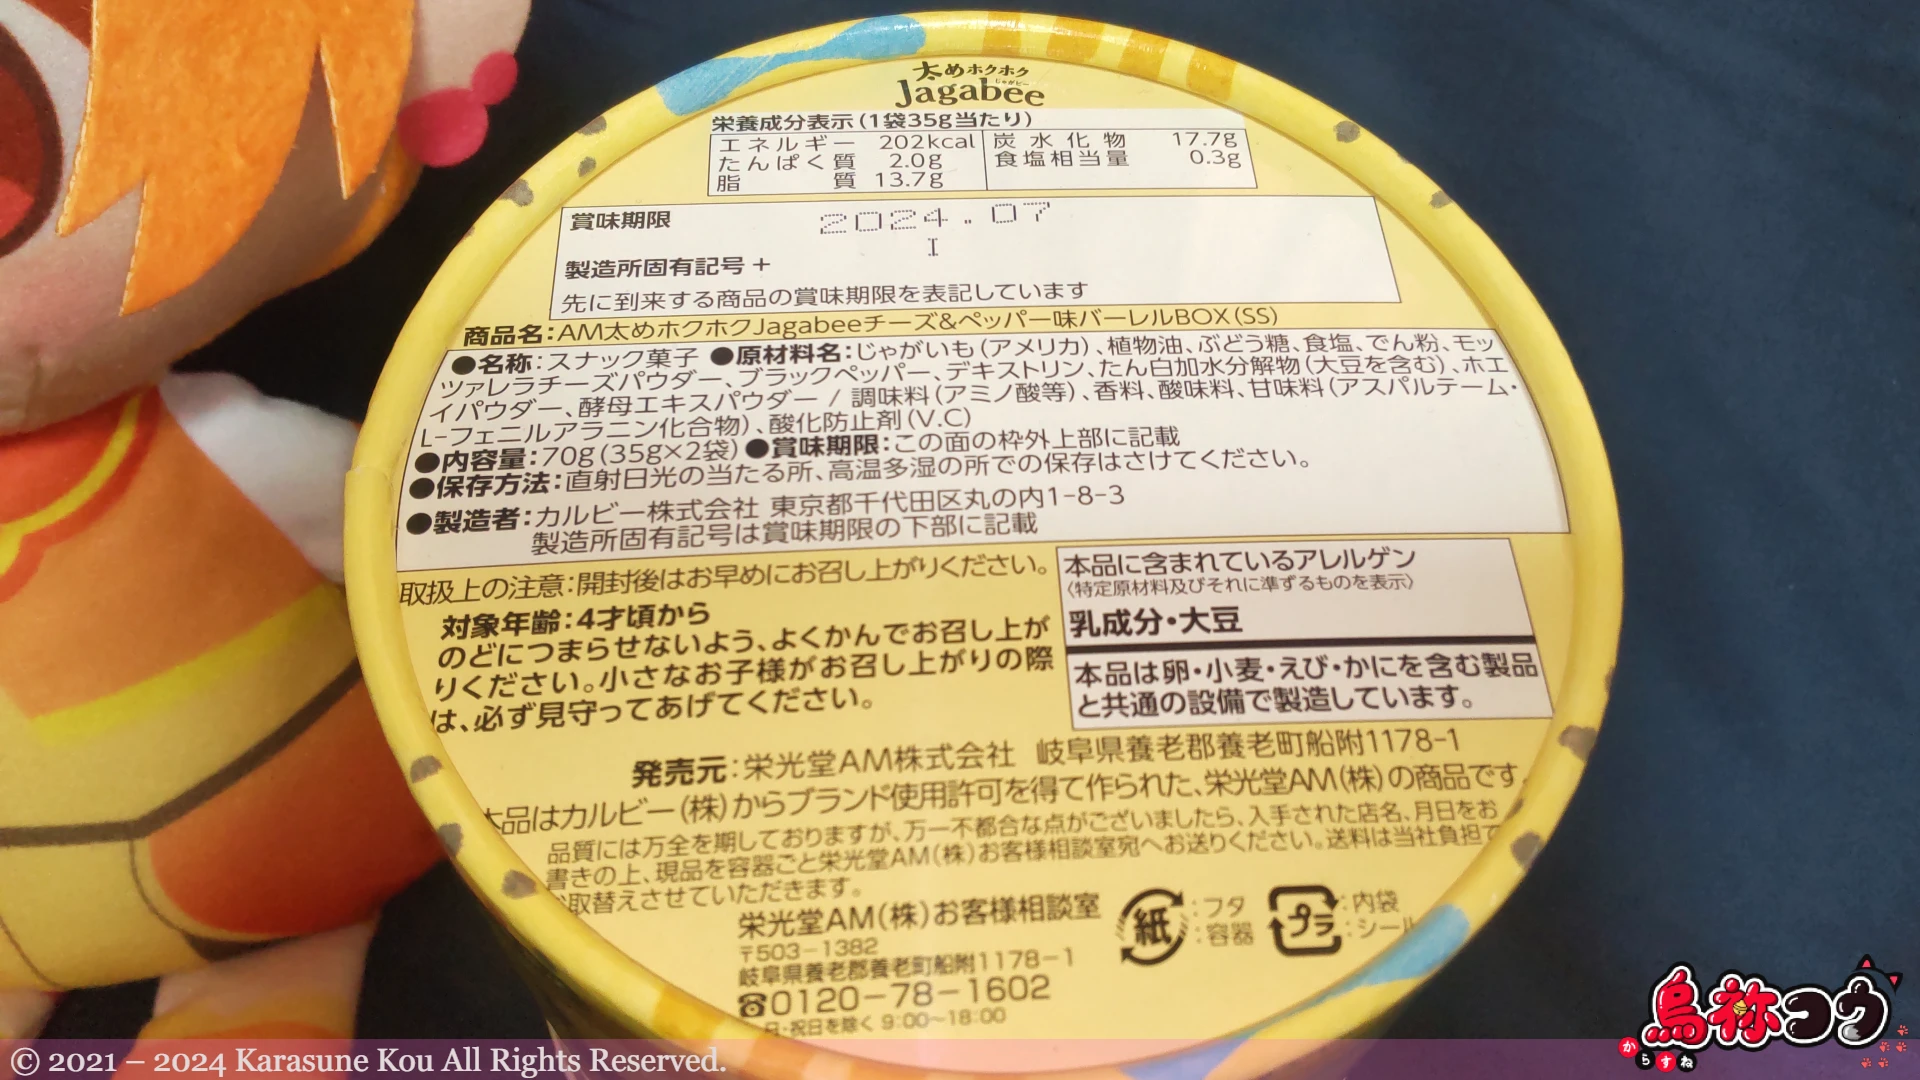 AM 太めホクホク Jagabee チーズ & ペッパー味バーレル BOX の底面の説明書きです